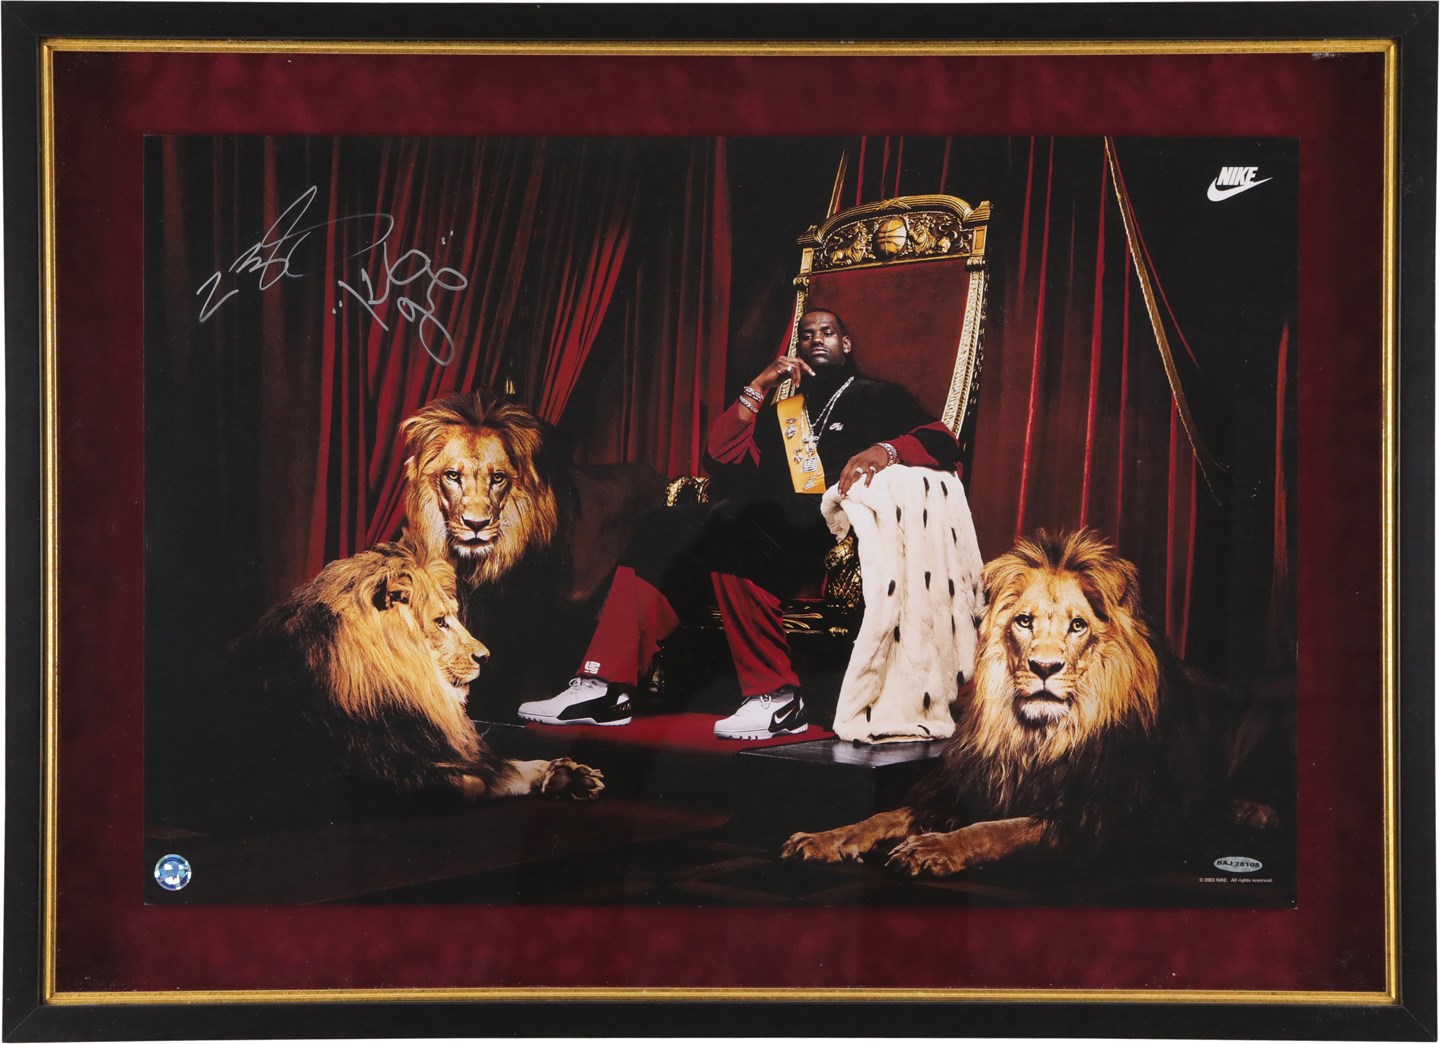 - 2003 LeBron James Rookie Signed & Inscribed "King James" Display (UDA)